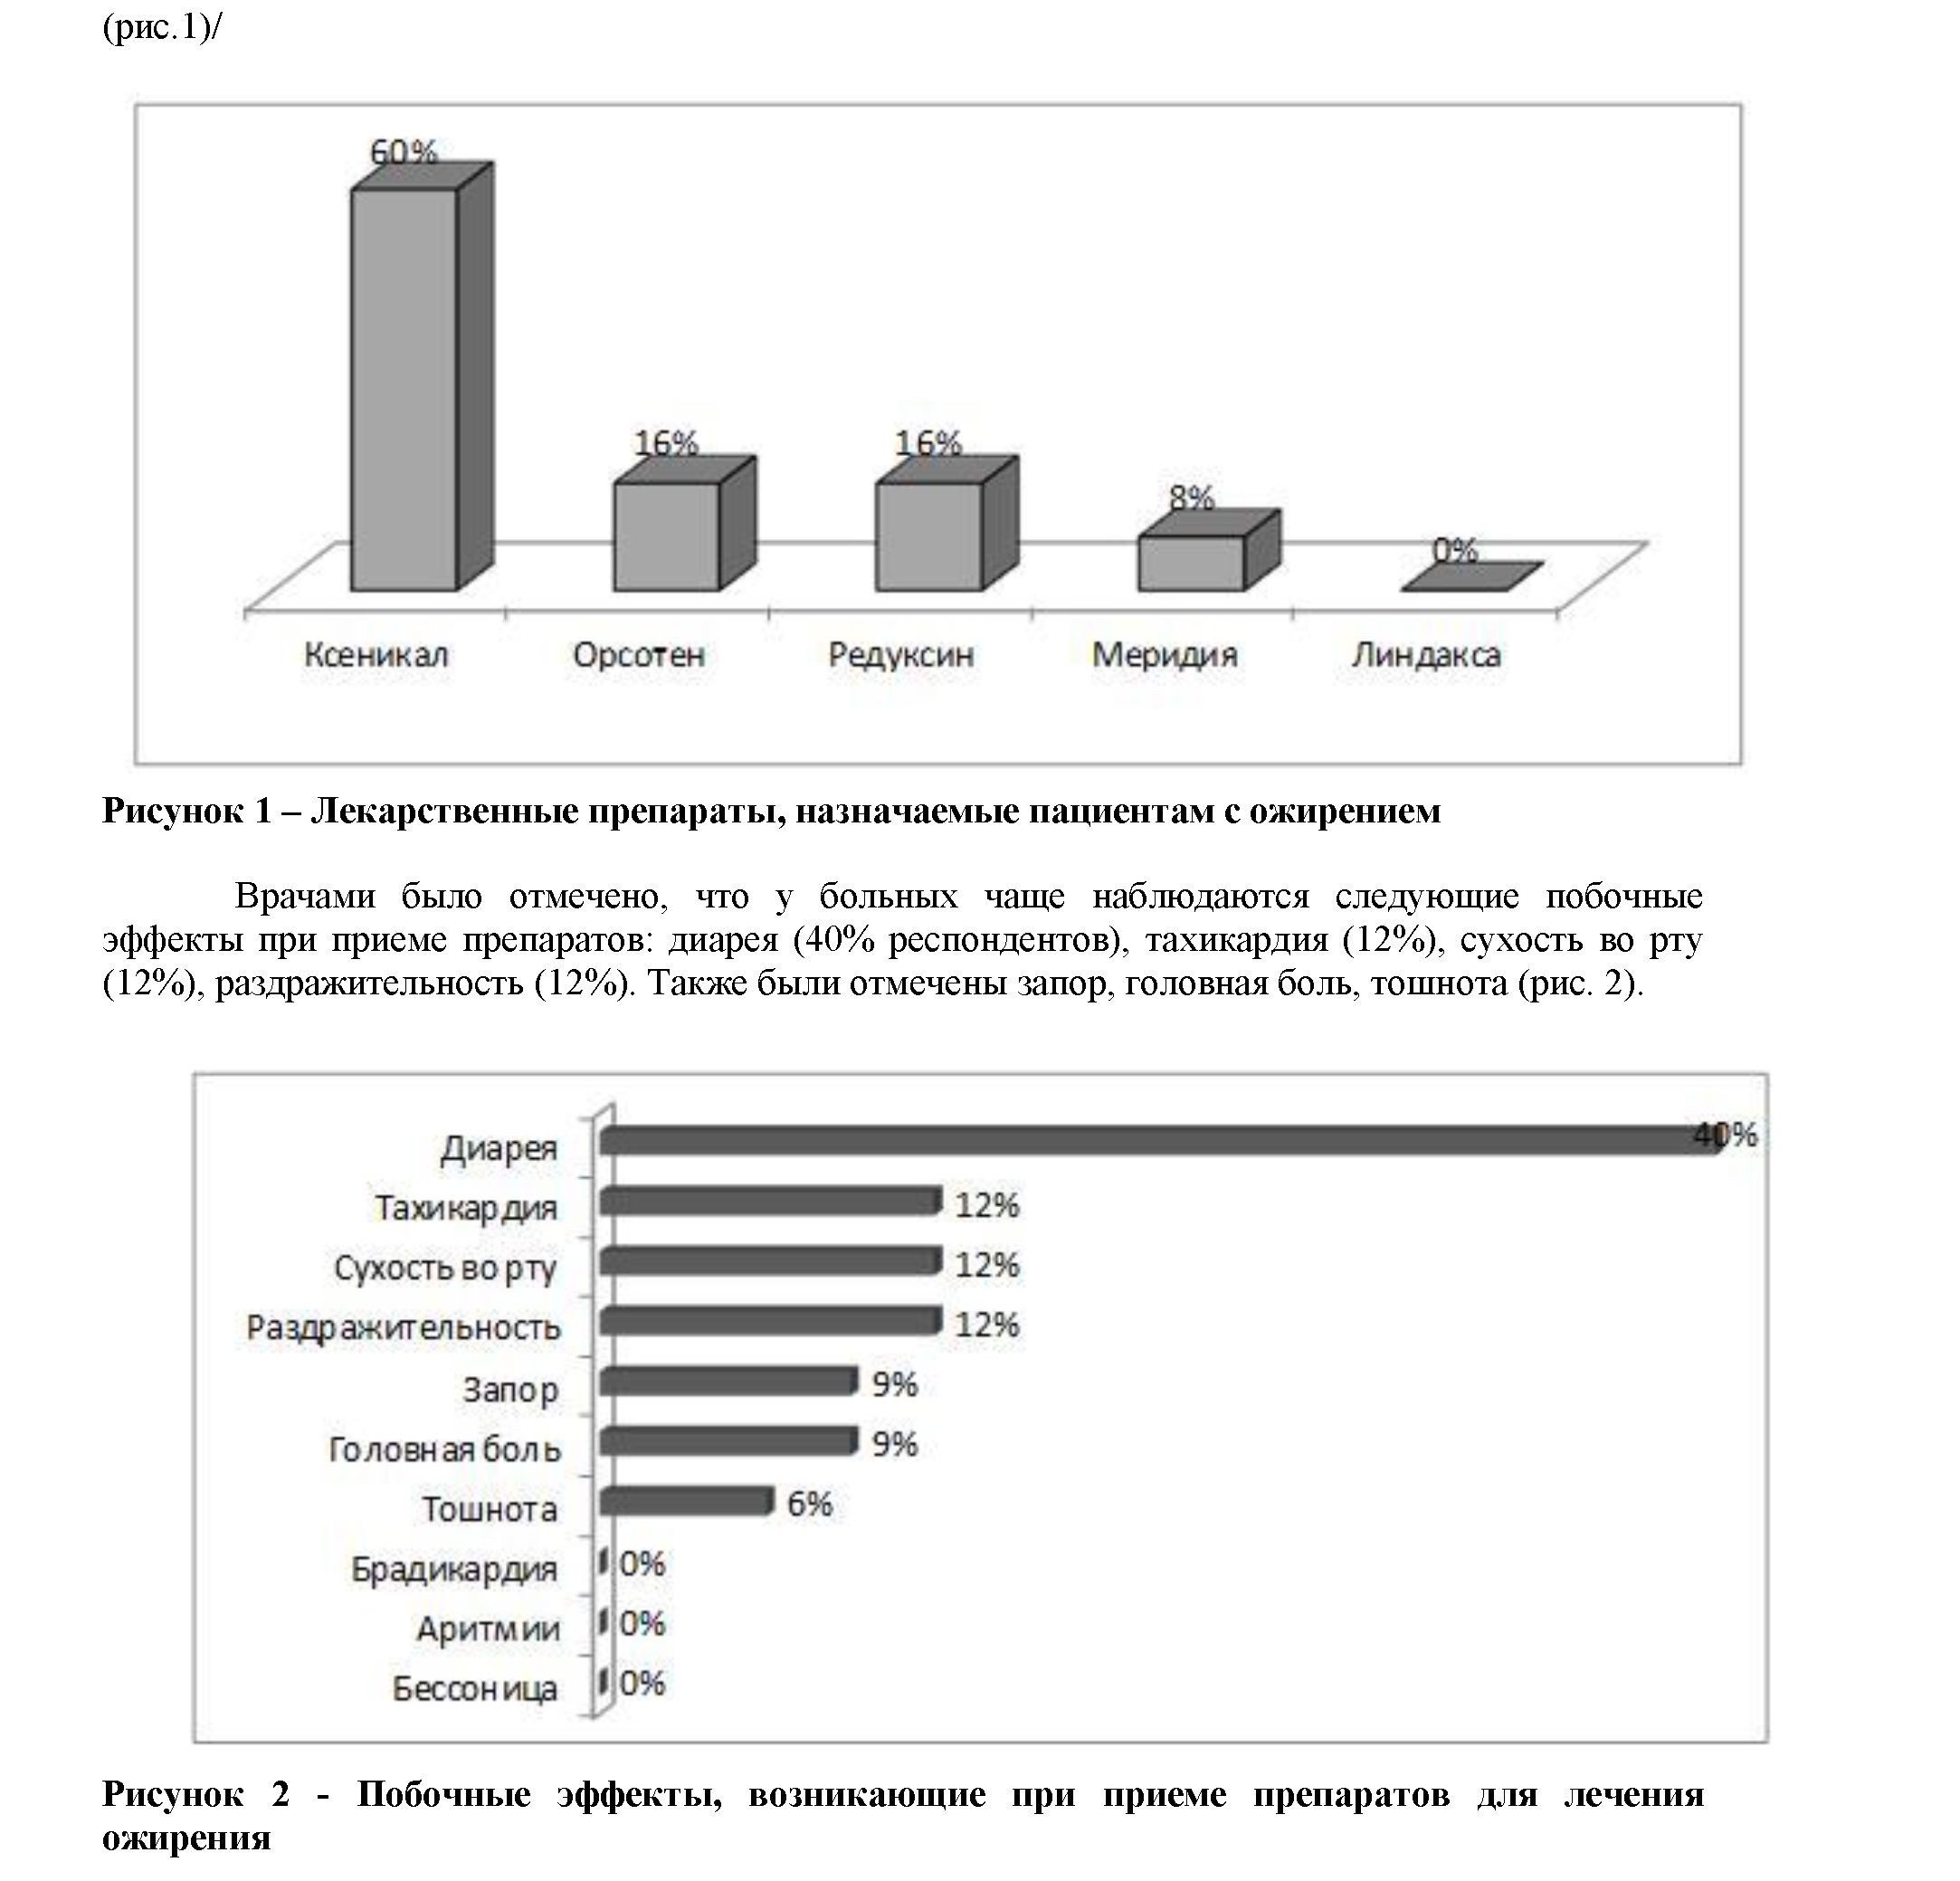 Оценка эффективности лекарственной терапии при избыточной массе тела и ожирении врачами г. Тюмени